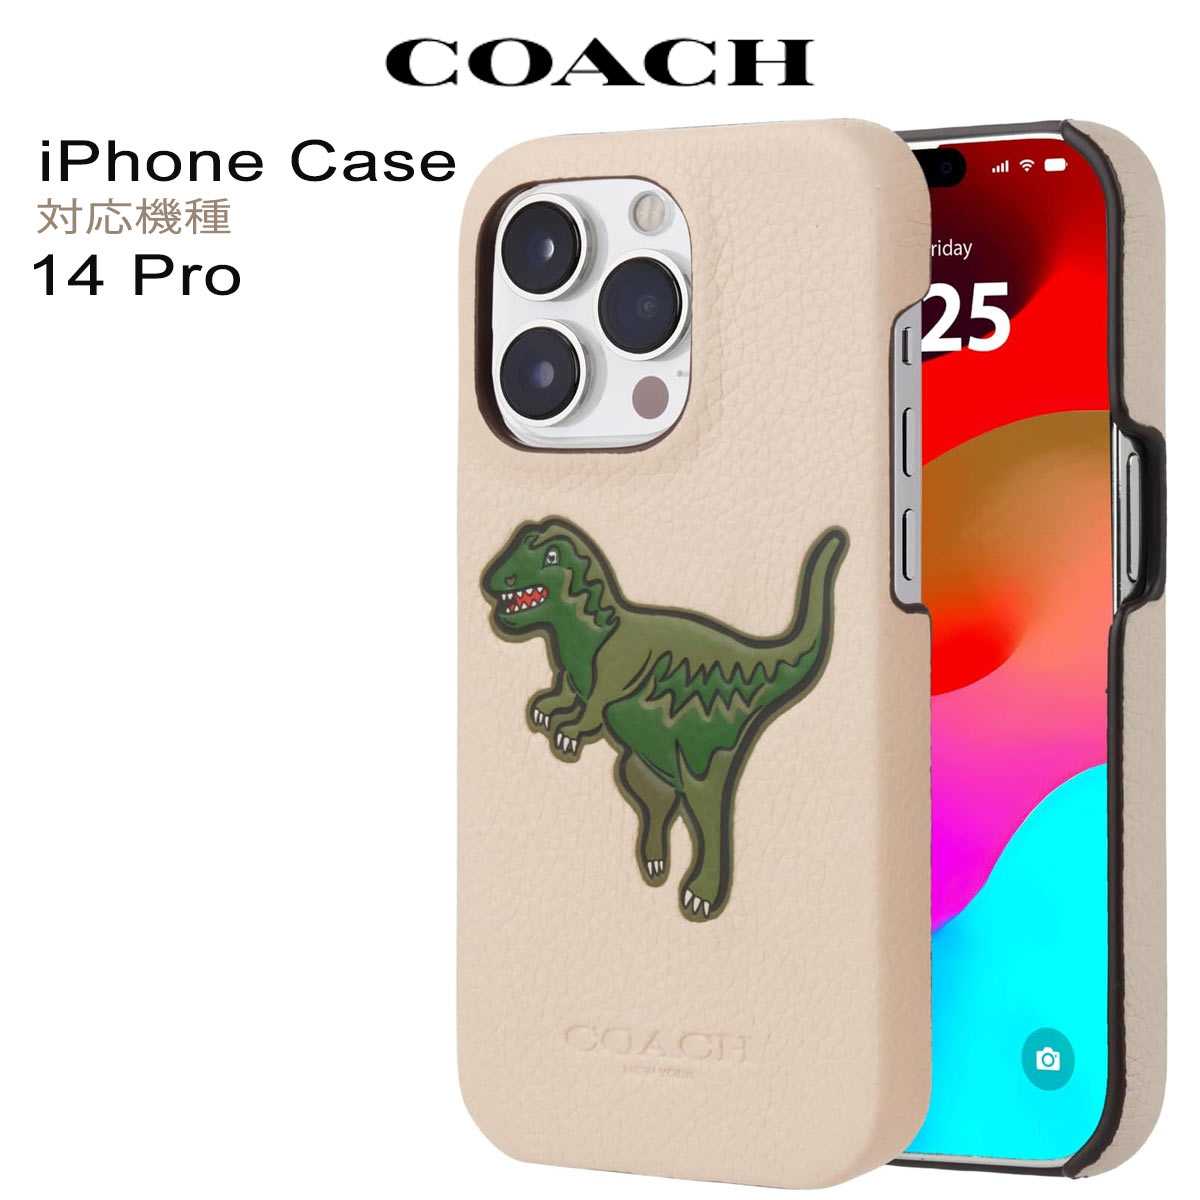 コーチ スマホケース コーチ iphone14 Pro ワイヤレス充電 恐竜 レザー スマホケース ブランド おしゃれ Coach